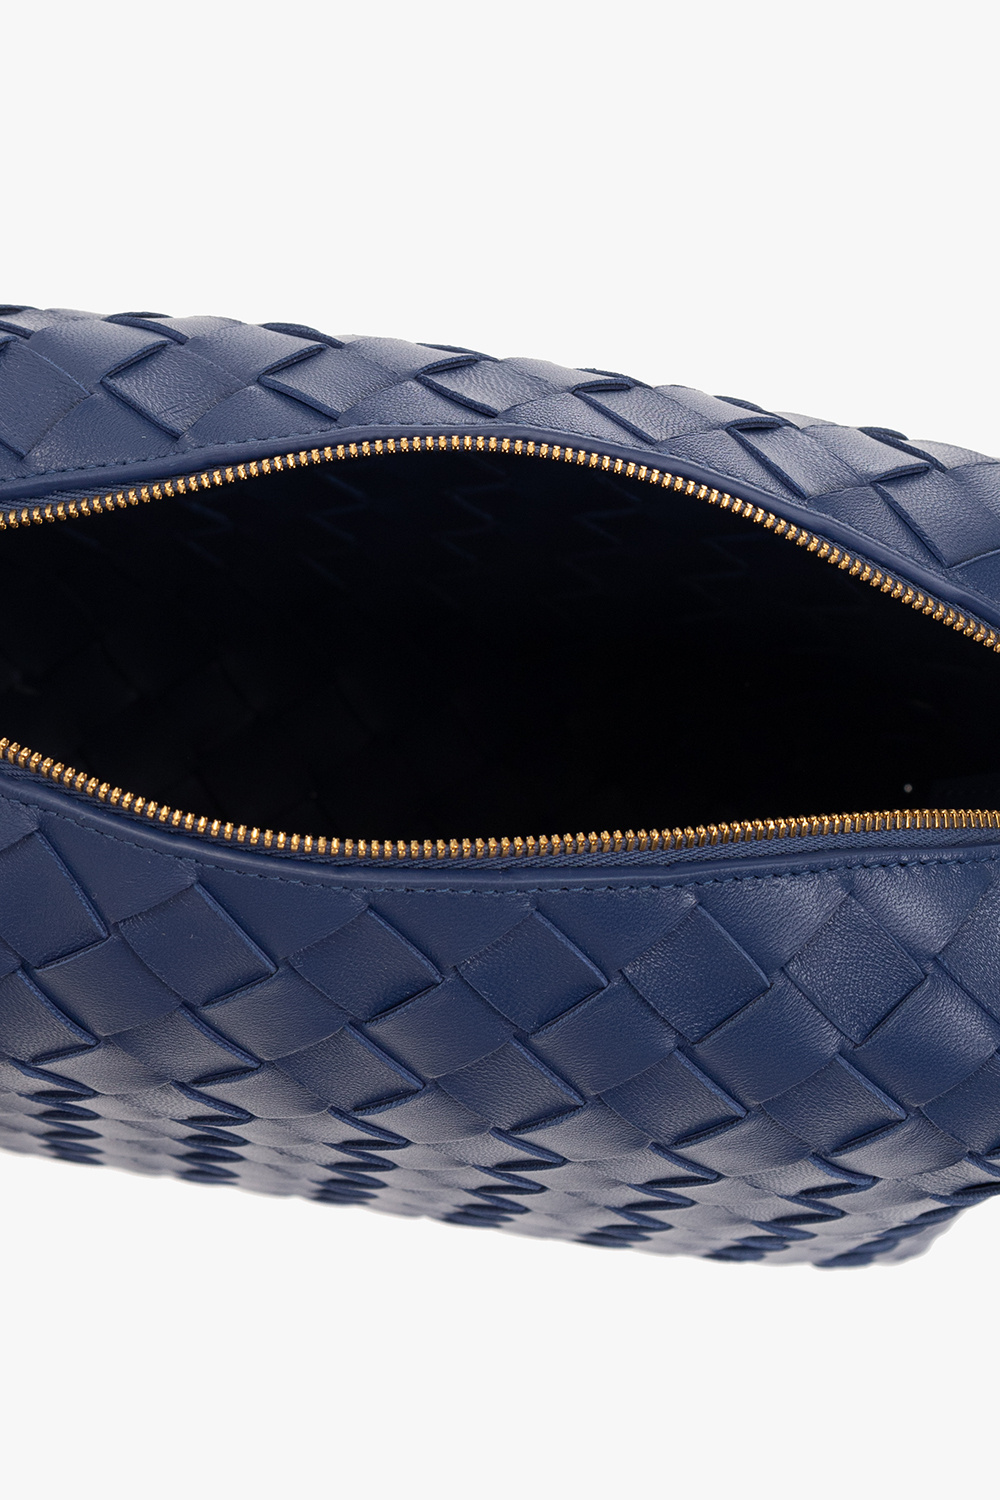 Bottega Veneta Blue Intrecciato Woven Nappa Leather Continental